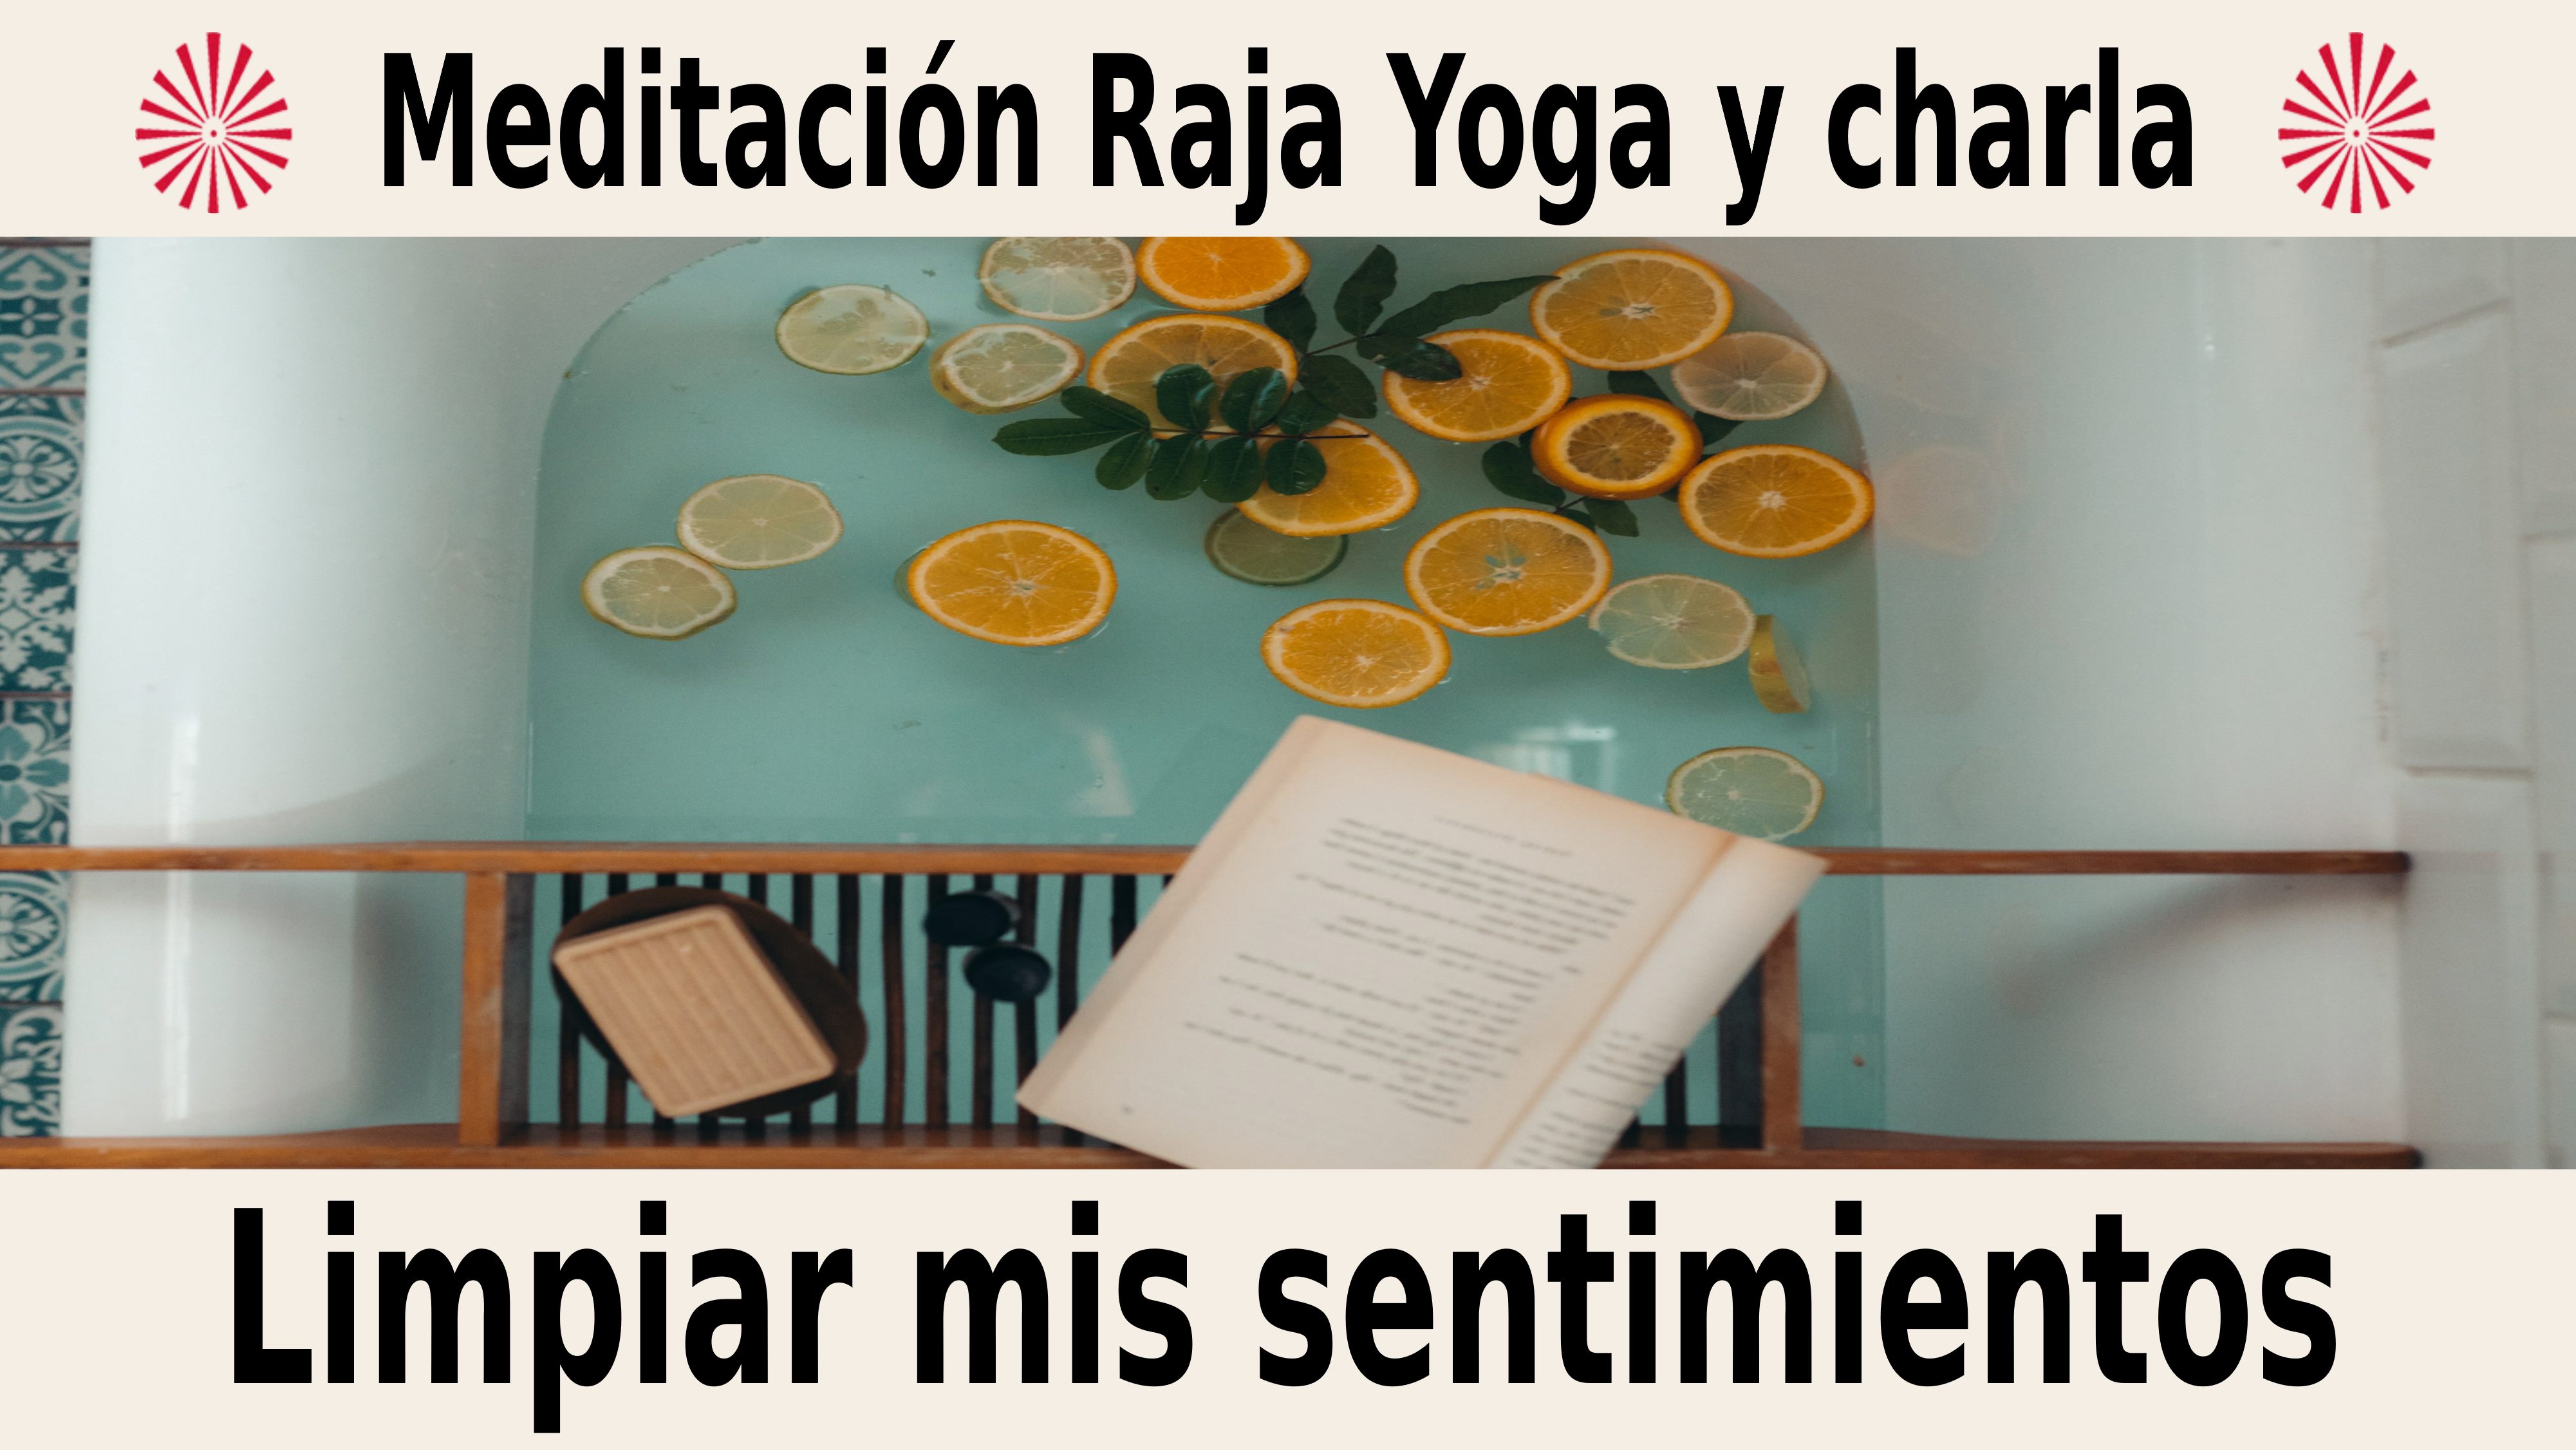 Meditación Raja Yoga y charla:  Limpiar mis sentimientos (2 Diciembre 2020) On-line desde Sevilla